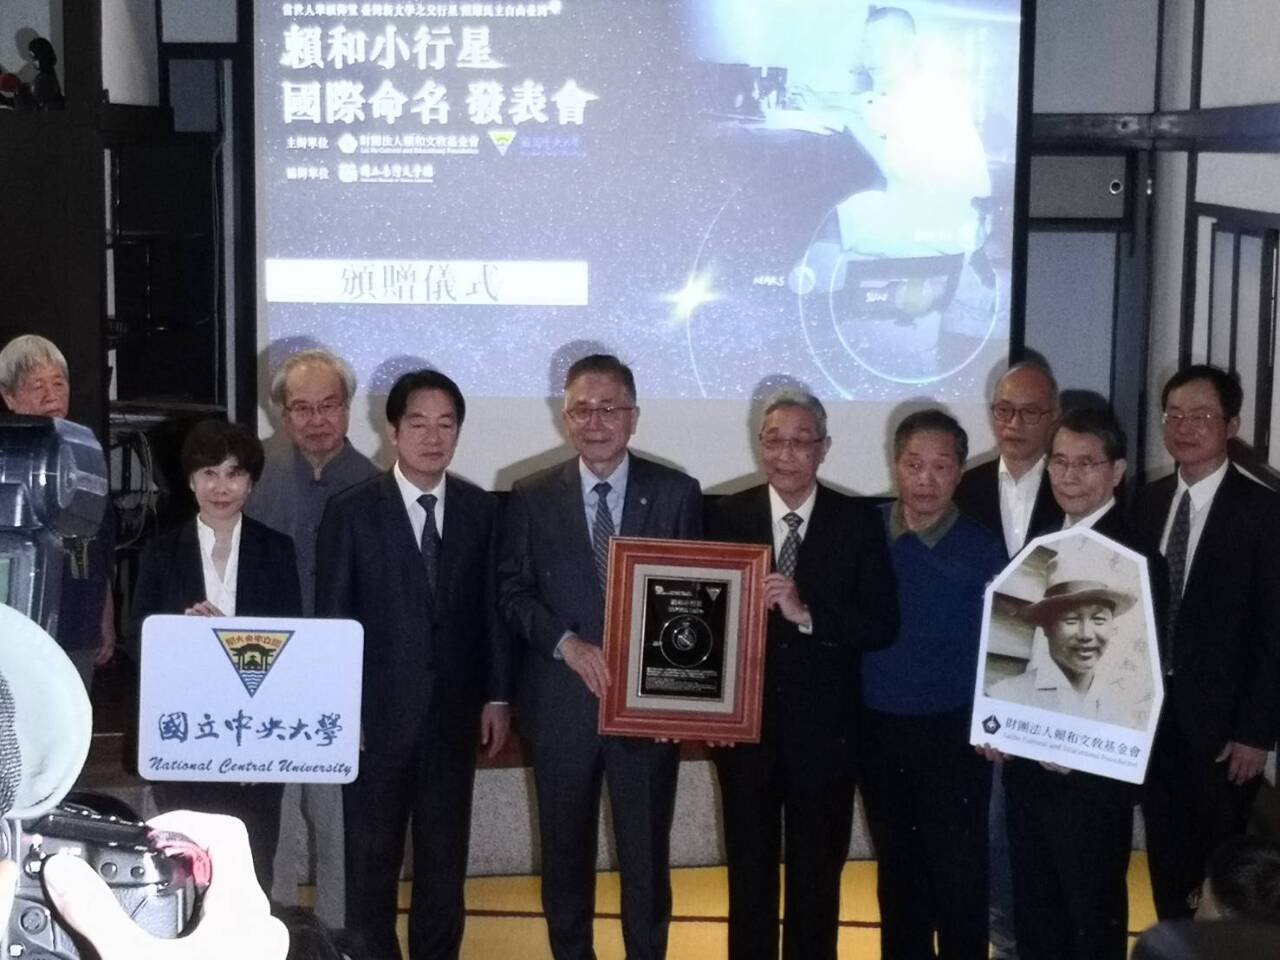 賴和小行星獲國際命名 賴副總統：感動宇宙光芒來自台灣